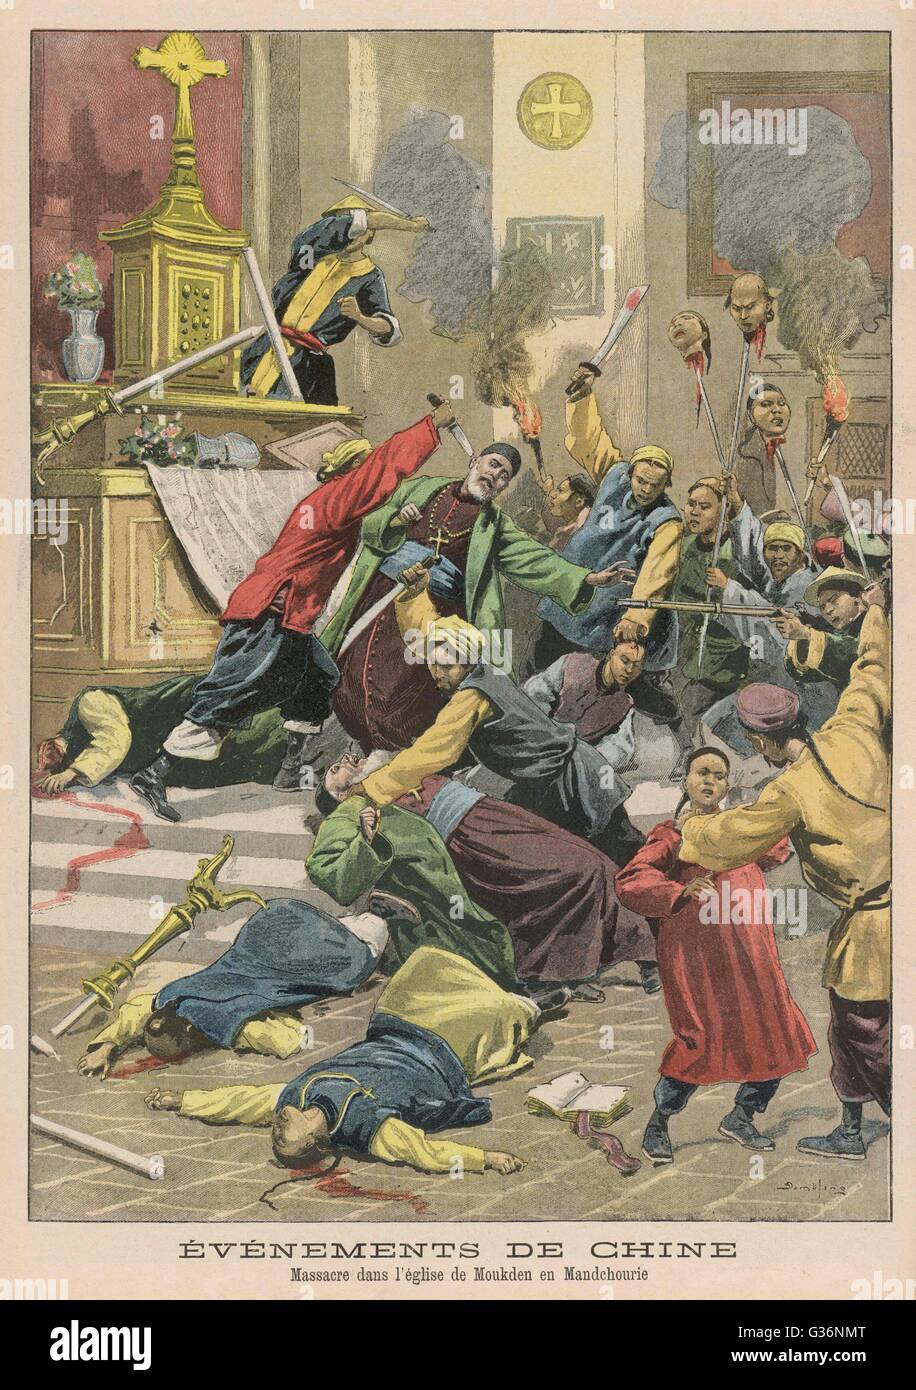 Bei Mukden, Mandschurei, Boxer Rebellen dringen in eine christliche Kirche und chinesischen Christen massakrieren.       Datum: 1900 Stockfoto